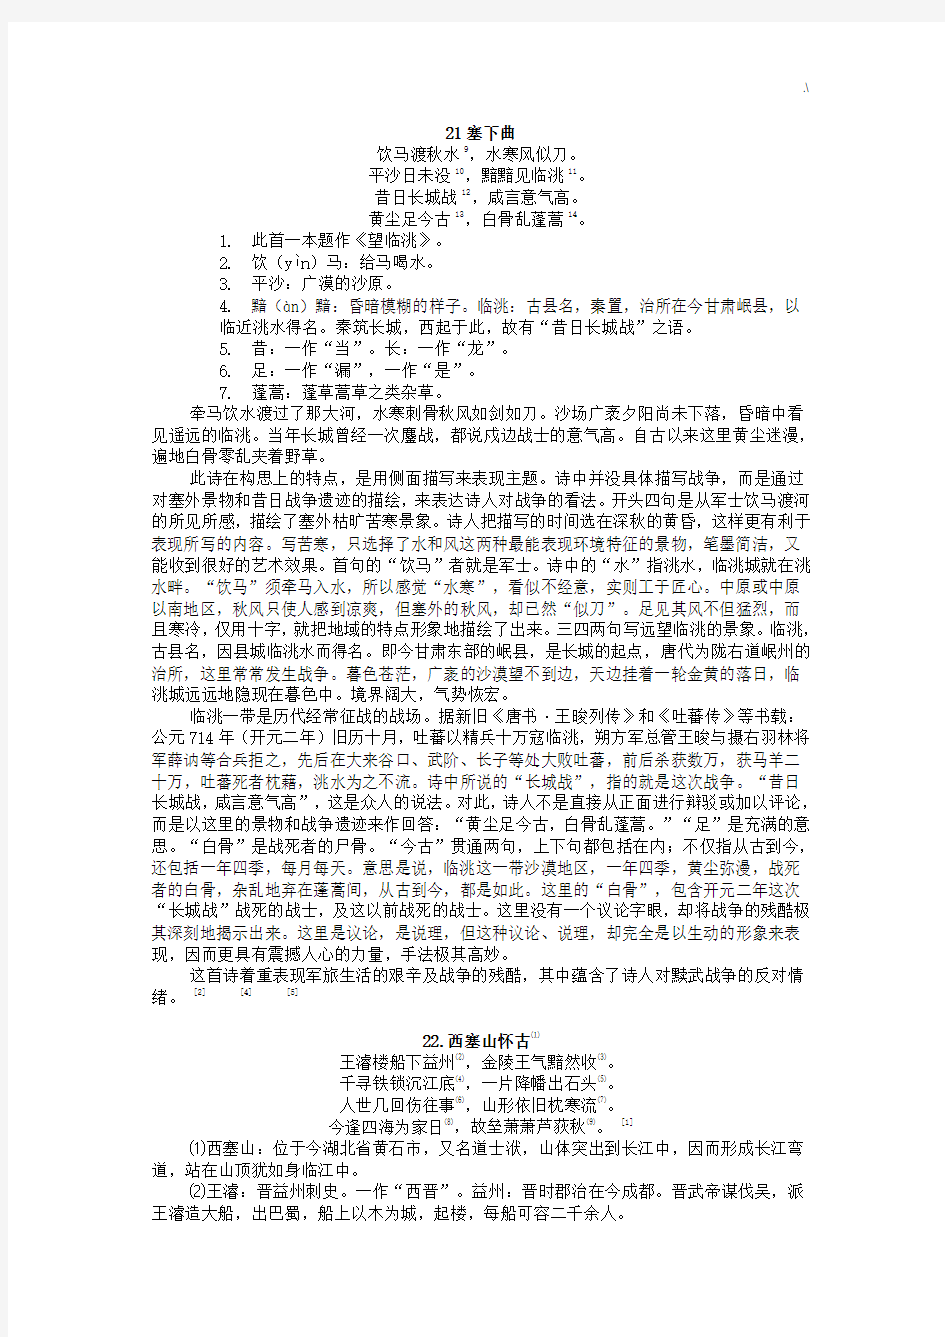 2019年度上海中学生古诗文大赛240首古诗文